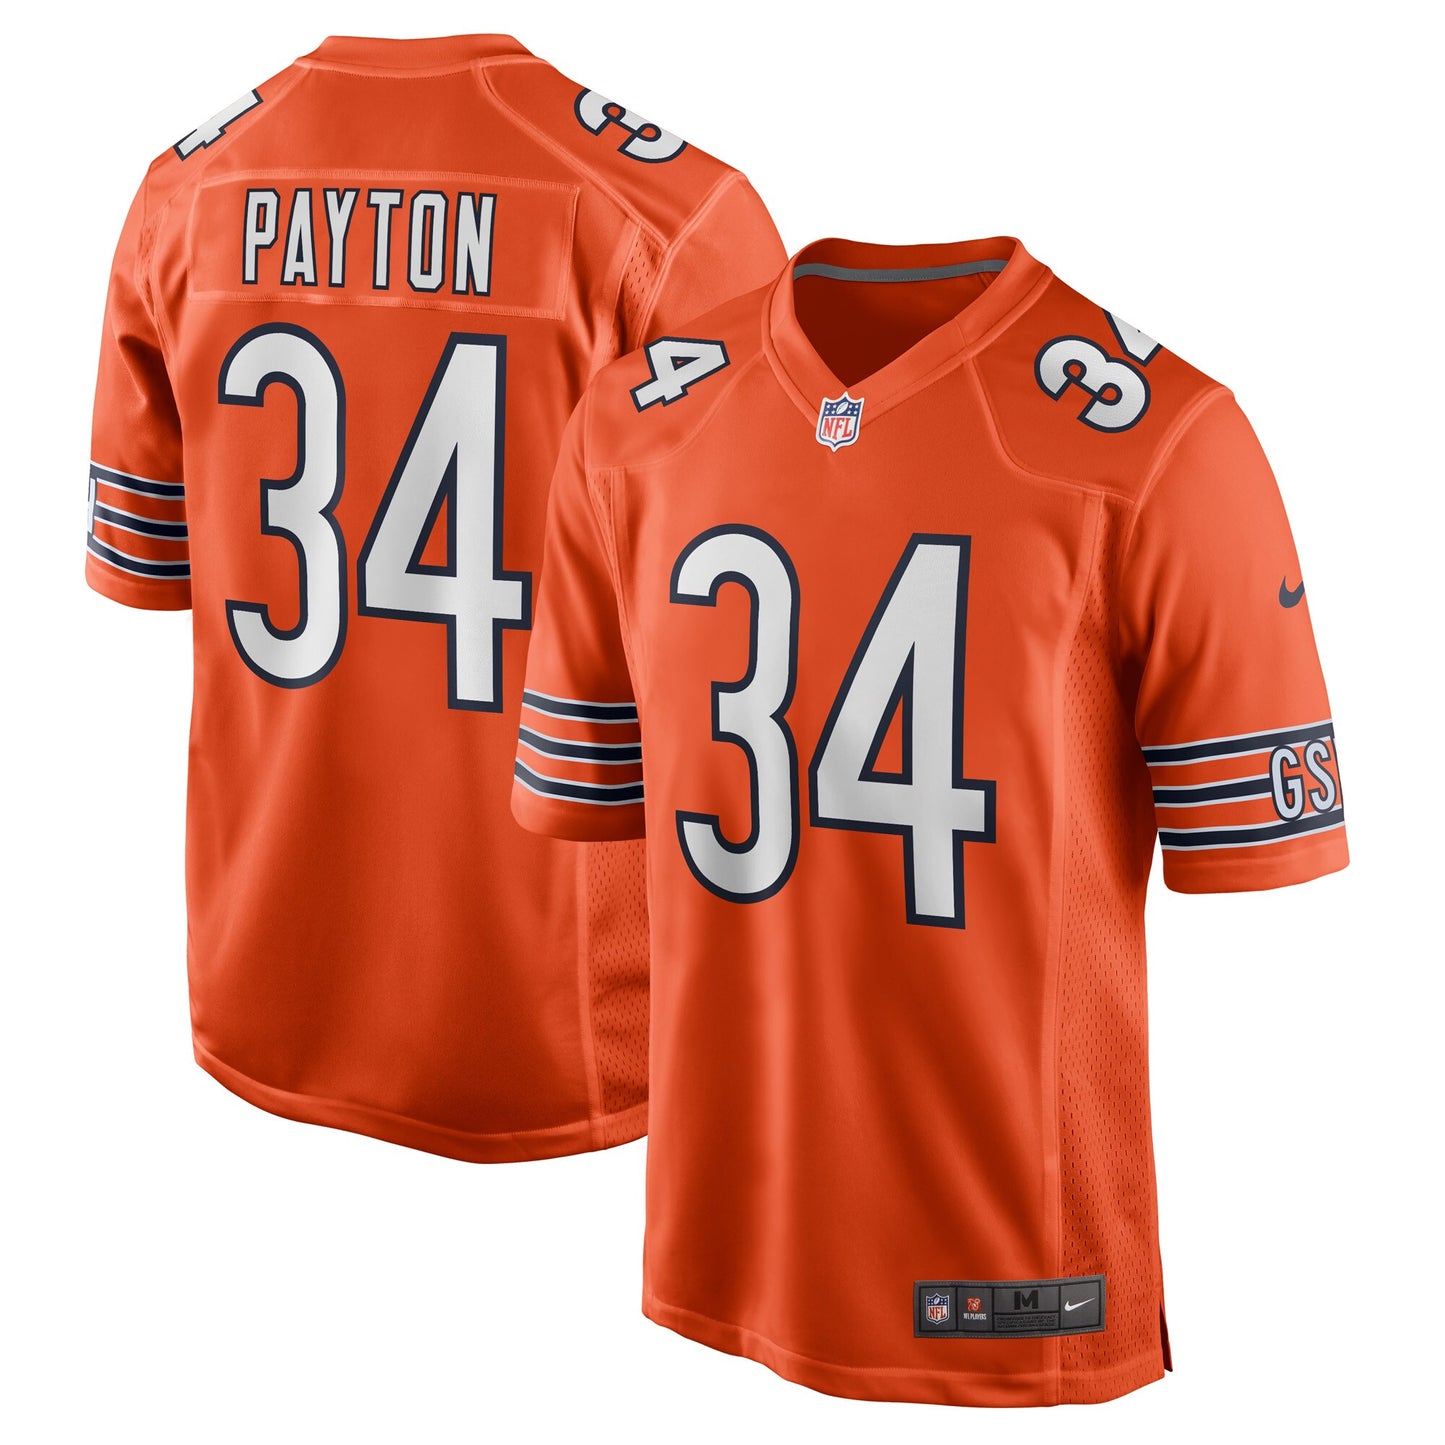 Walter Payton Chicago Bears Nike Retired Player Jersey - Orange